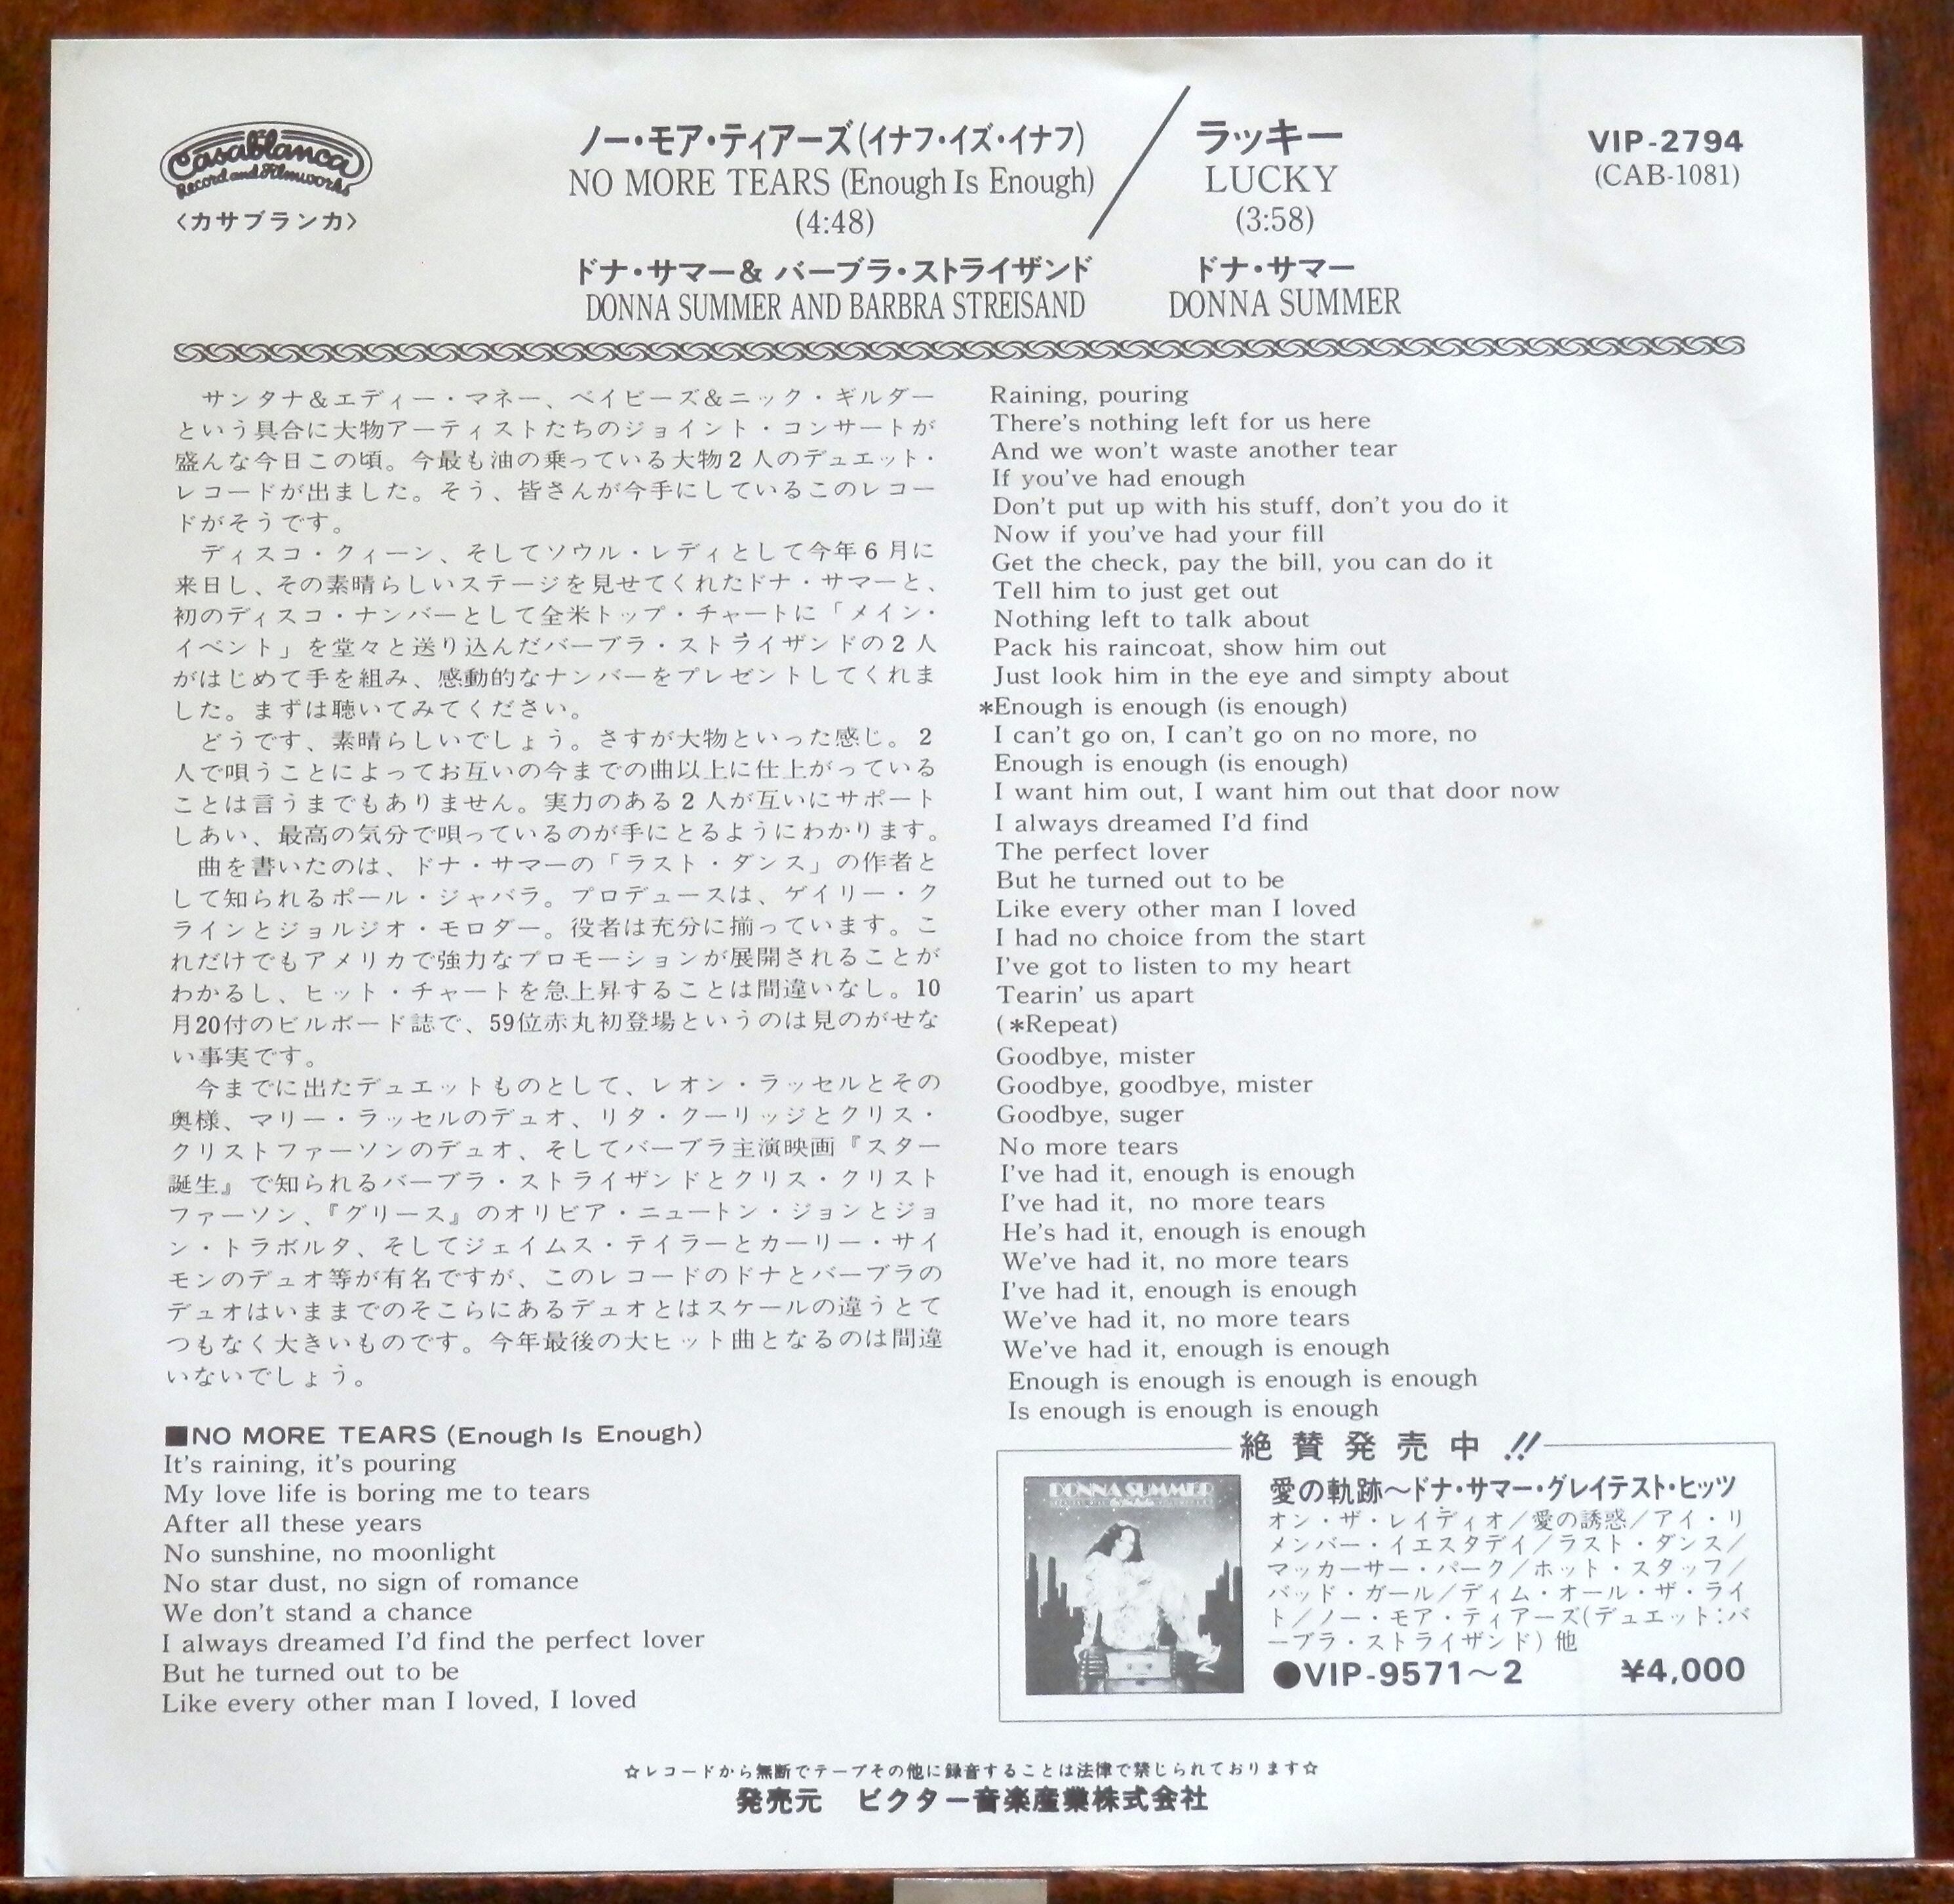 79【EP】ドナ・サマー/バーブラ・ストライサンド ノー・モア・ティアーズ 音盤窟レコード